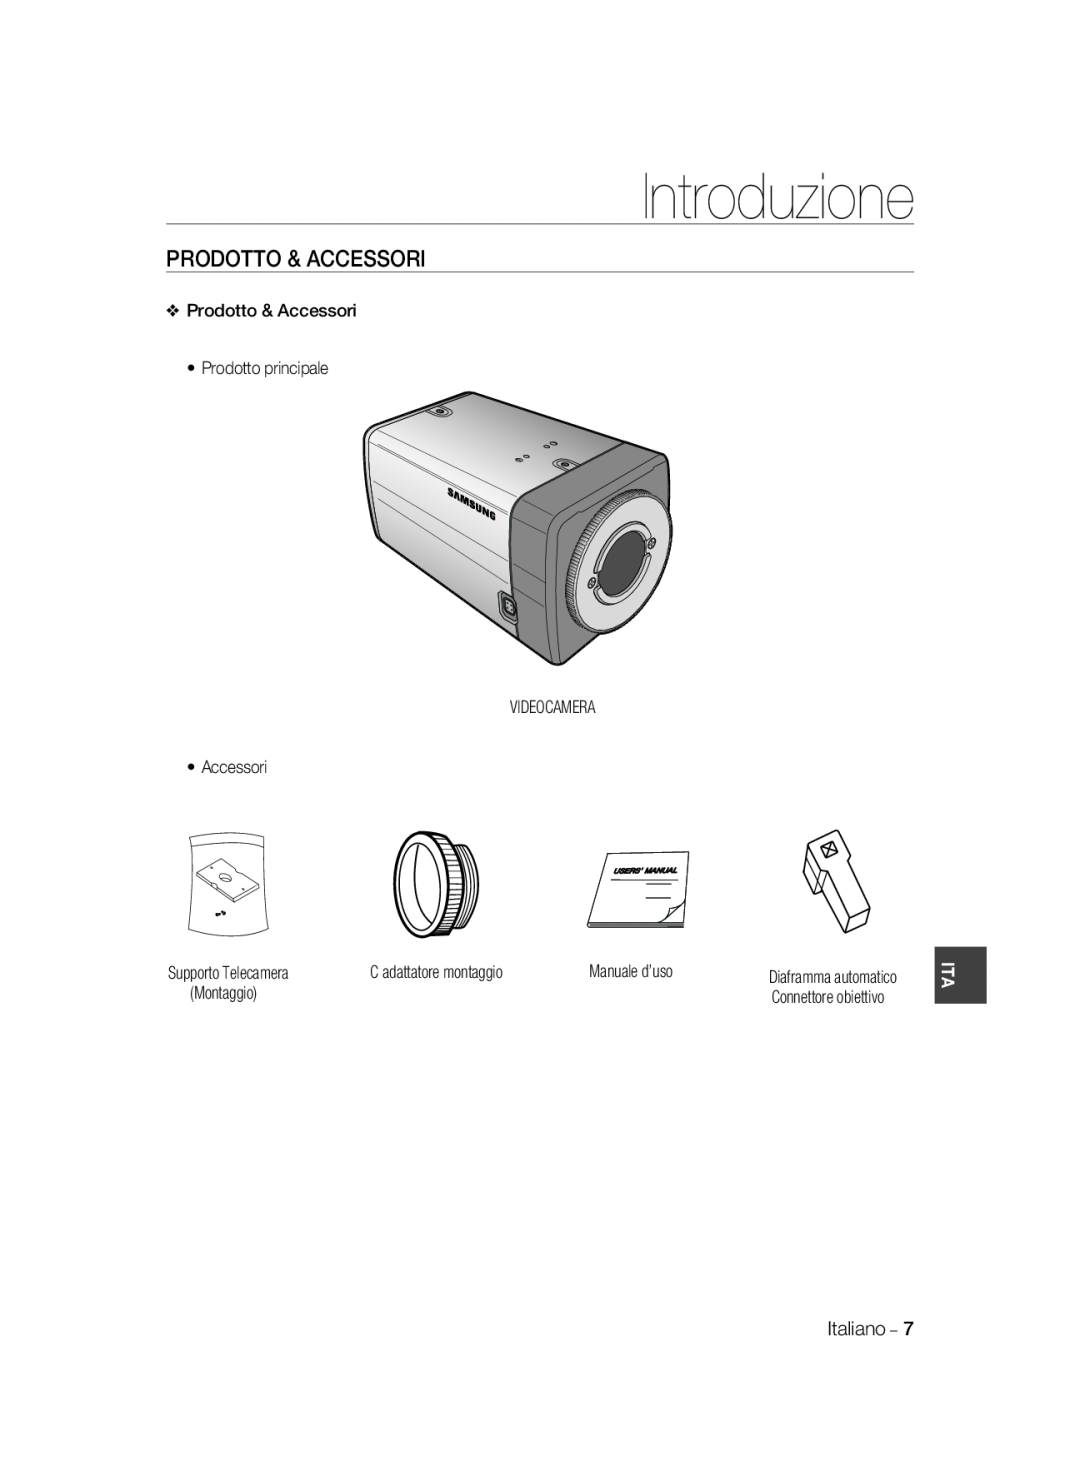 Samsung SCC-B2037P, SCC-B2337P manual Prodotto & Accessori, Introduzione, Connettore obiettivo 